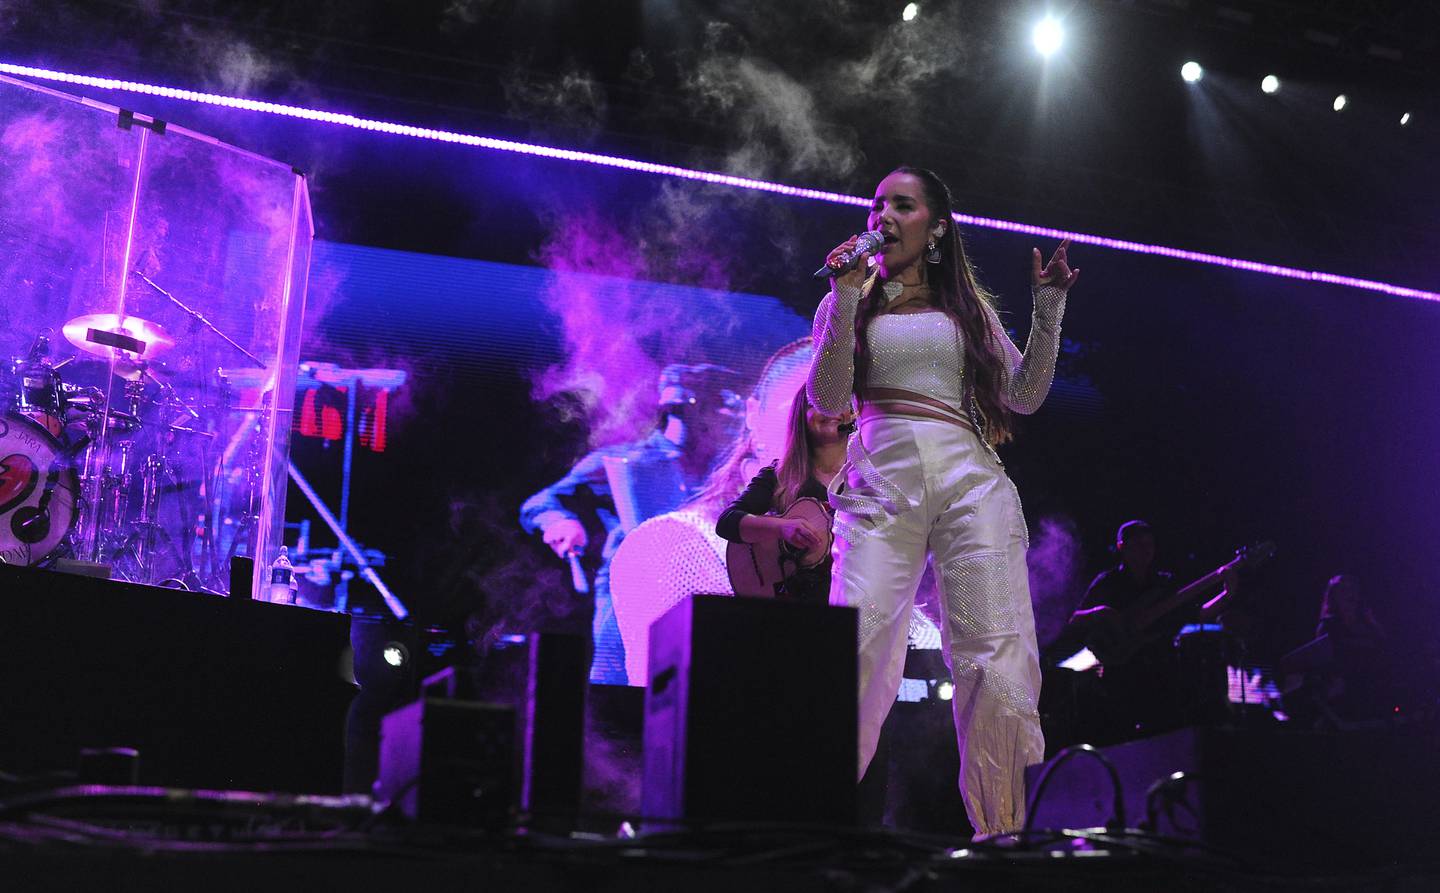 A la cantante colombiana Paola Jara le correspondió abrir el concierto de los Ángeles Azules. La gente coreó sus canciones y se emocionó en su presentación.